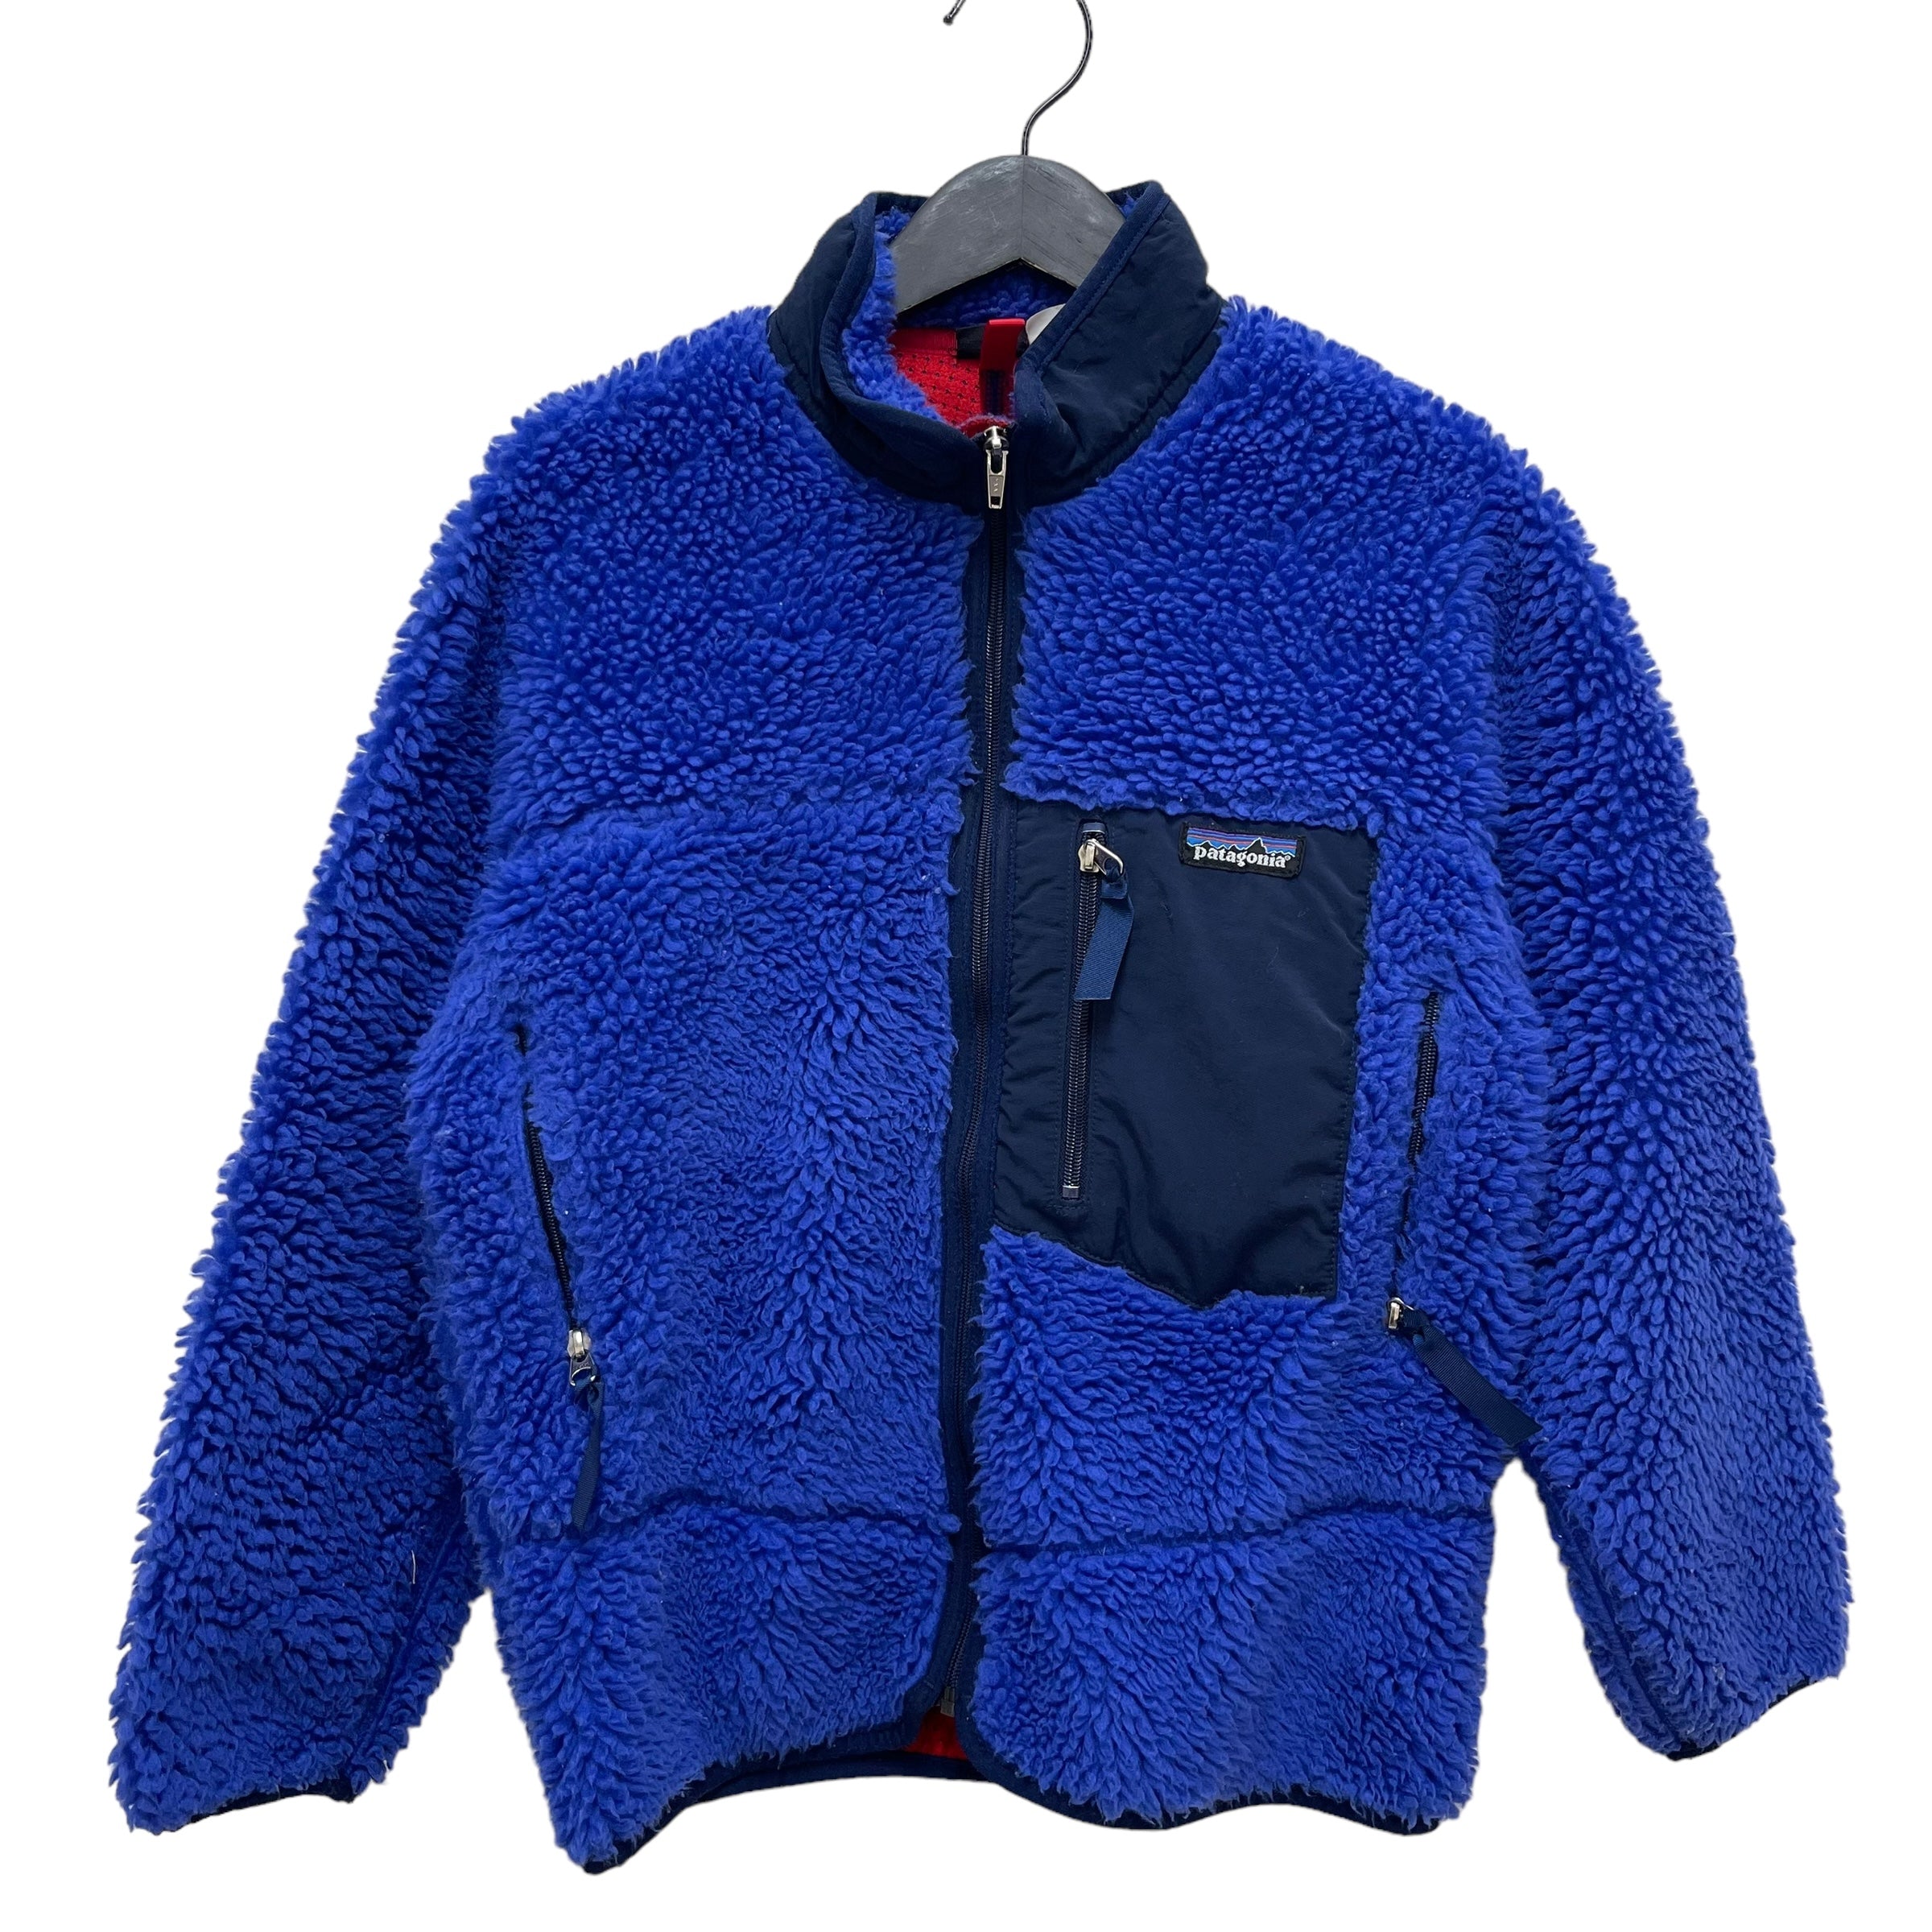 GC169 USA製 patagonia キッズ ジュニア 子供服 フリーストップス ブルー サイズ130〜140